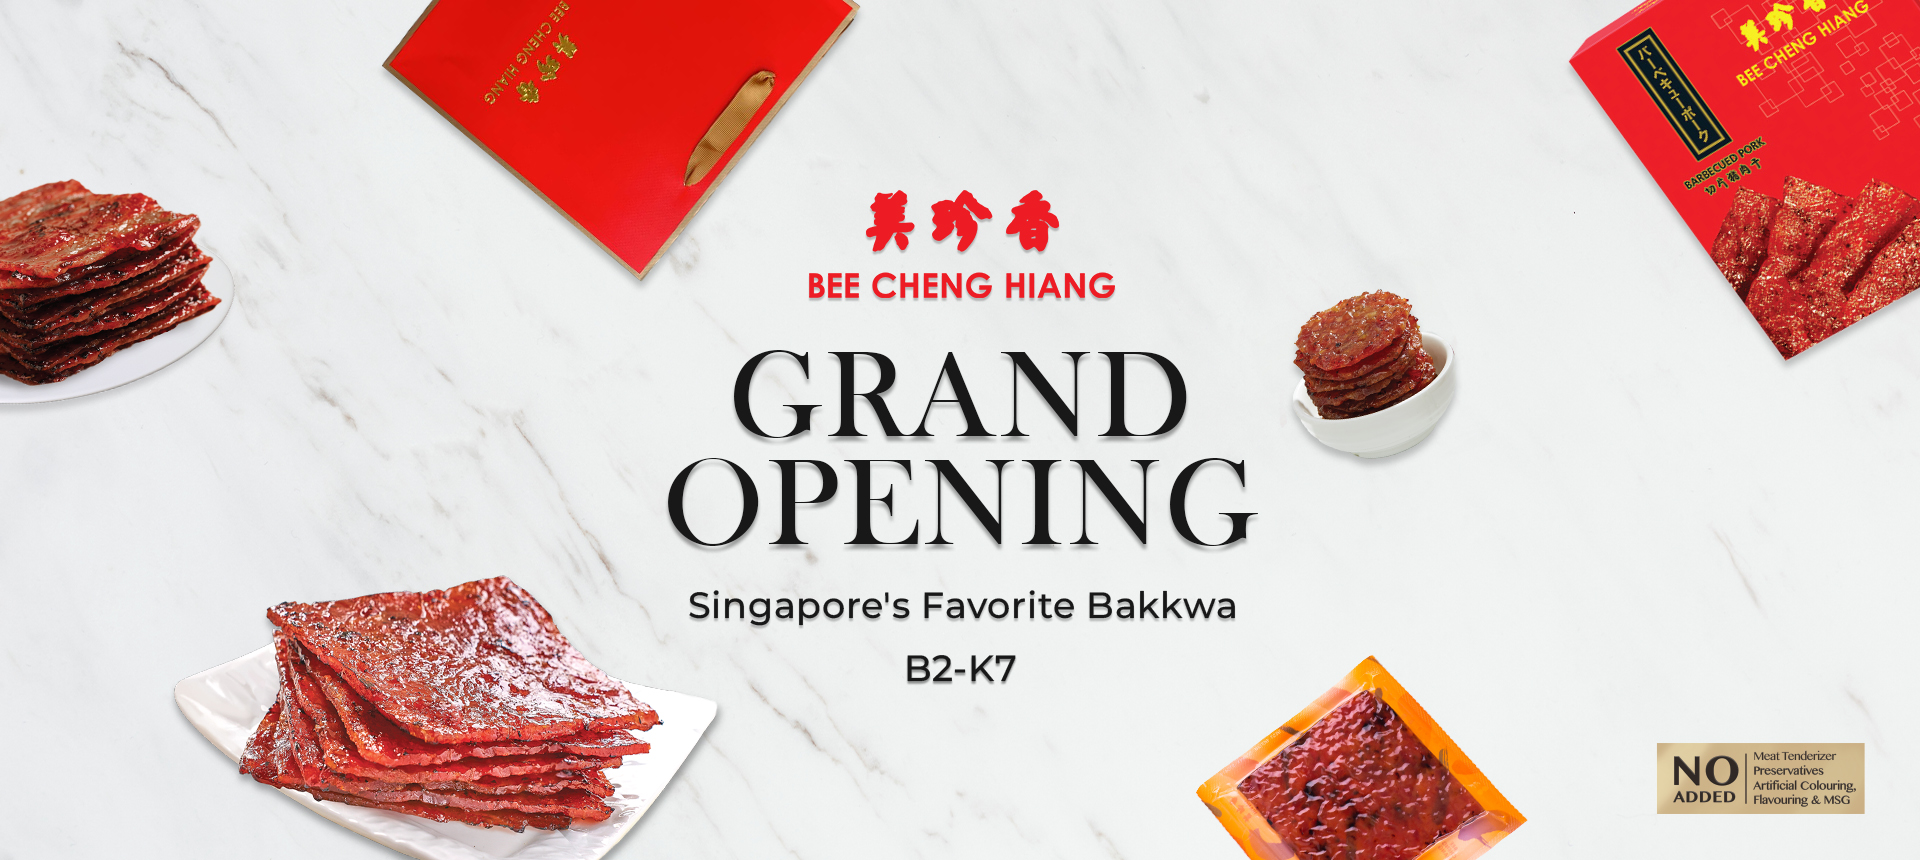 WELCOME BEE CHENG HIANG TO SAIGON CENTRE